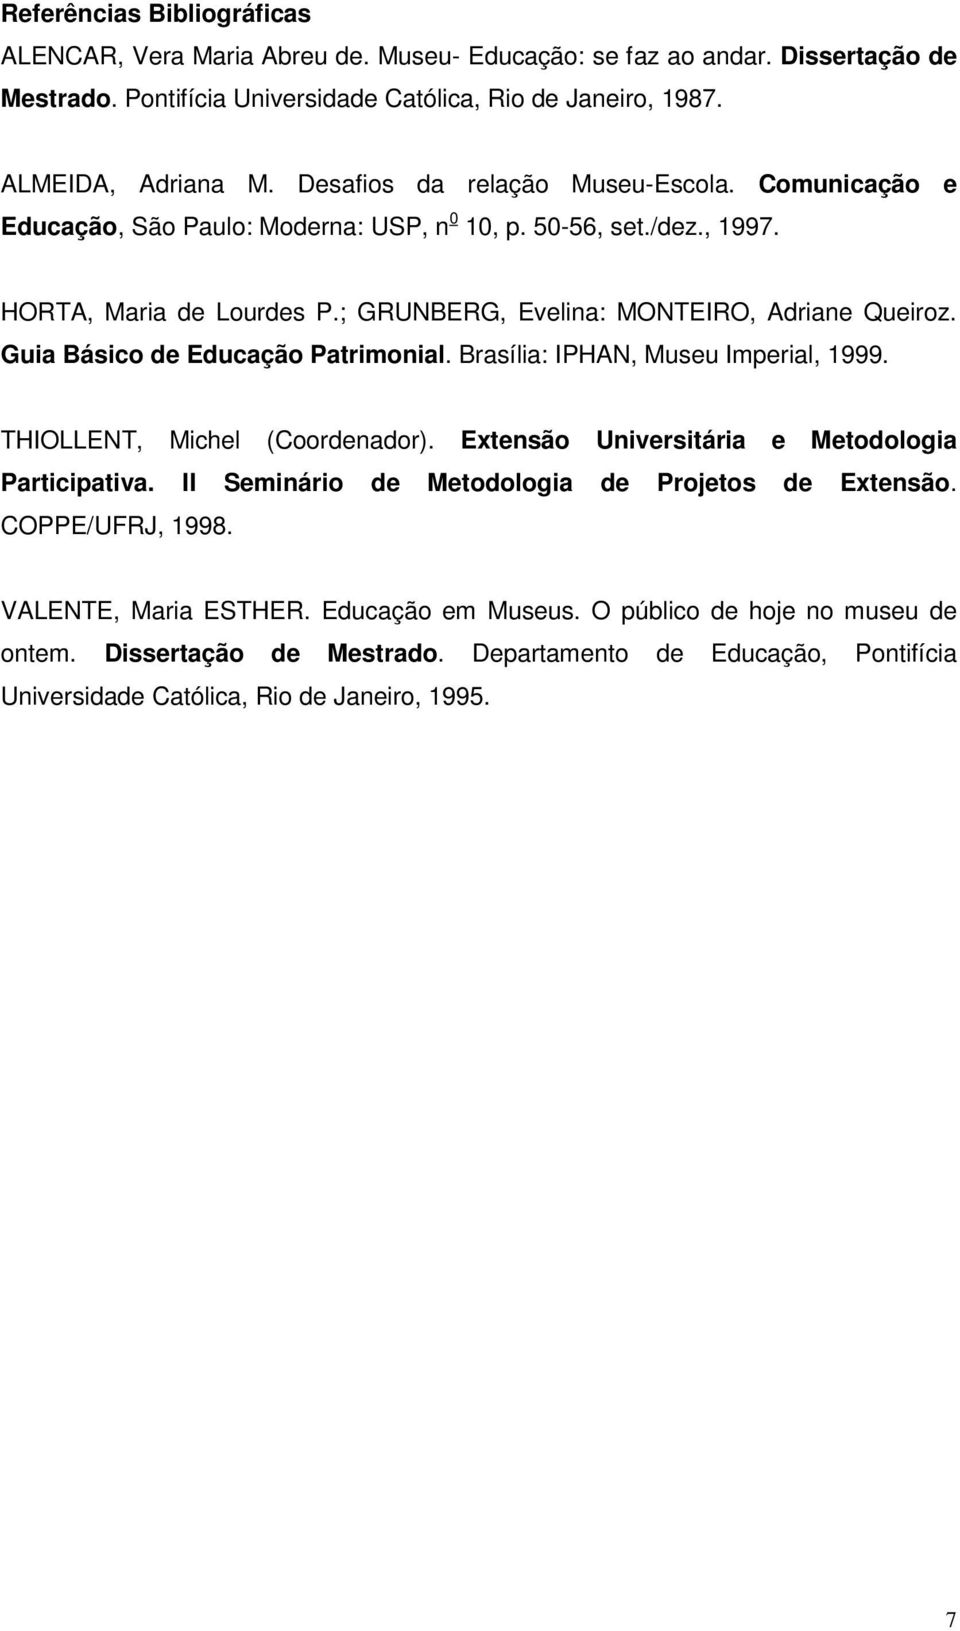 Guia Básico de Educação Patrimonial. Brasília: IPHAN, Museu Imperial, 1999. THIOLLENT, Michel (Coordenador). Extensão Universitária e Metodologia Participativa.